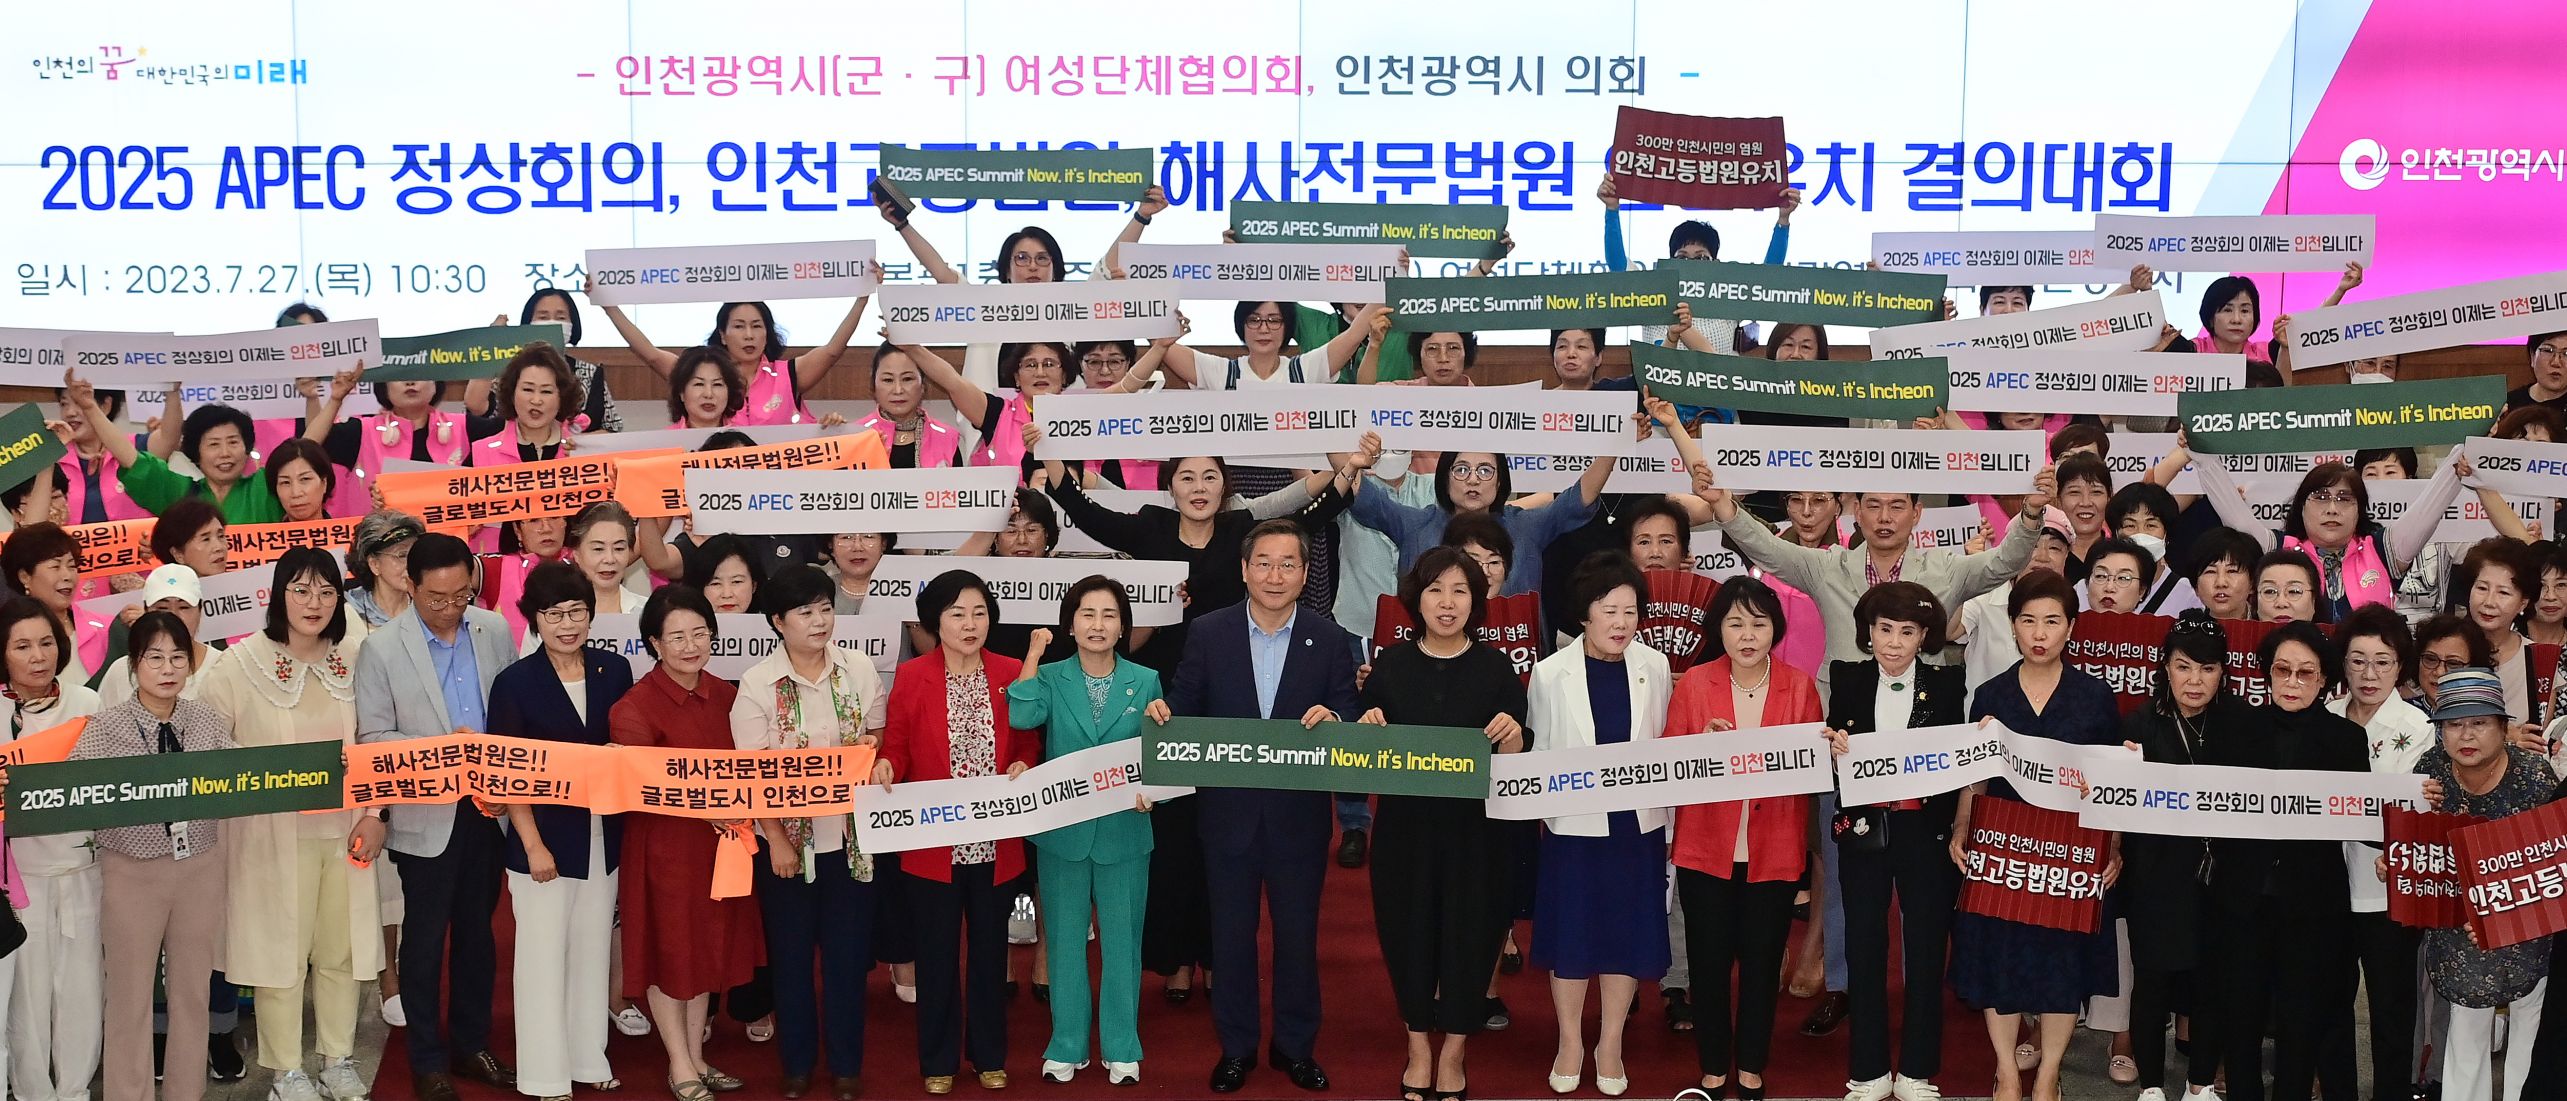 인천 여성들, APEC·인천고법·해사법원 유치에 합심 관련 이미지